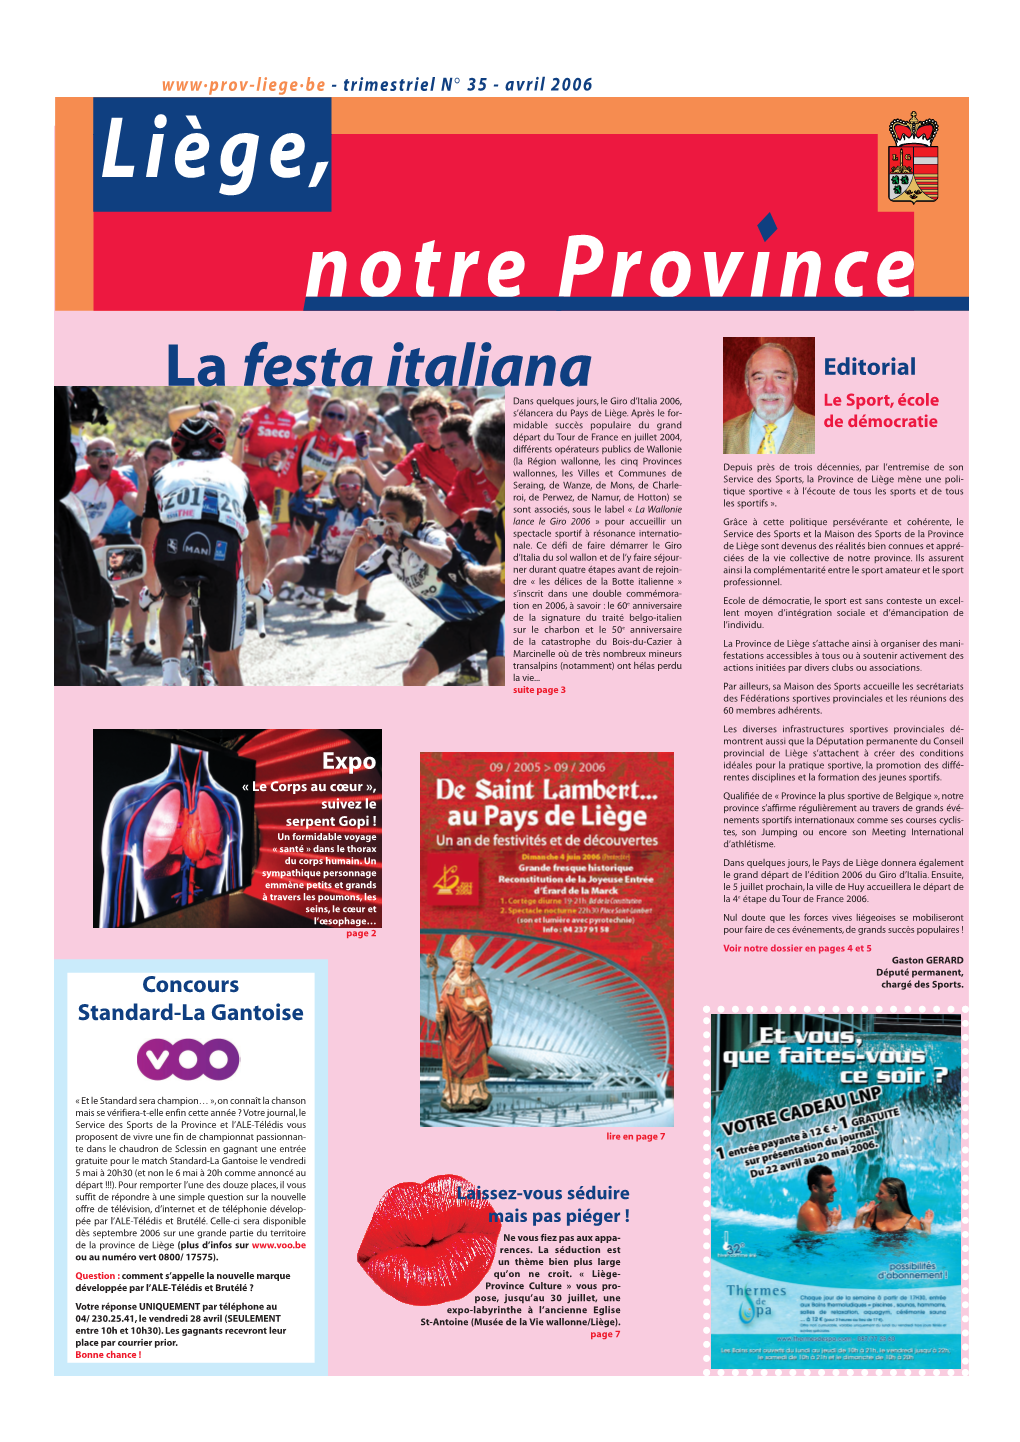 La Festa Italiana Editorial Dans Quelques Jours, Le Giro D’Italia 2006, Le Sport, École S’Élancera Du Pays De Liège